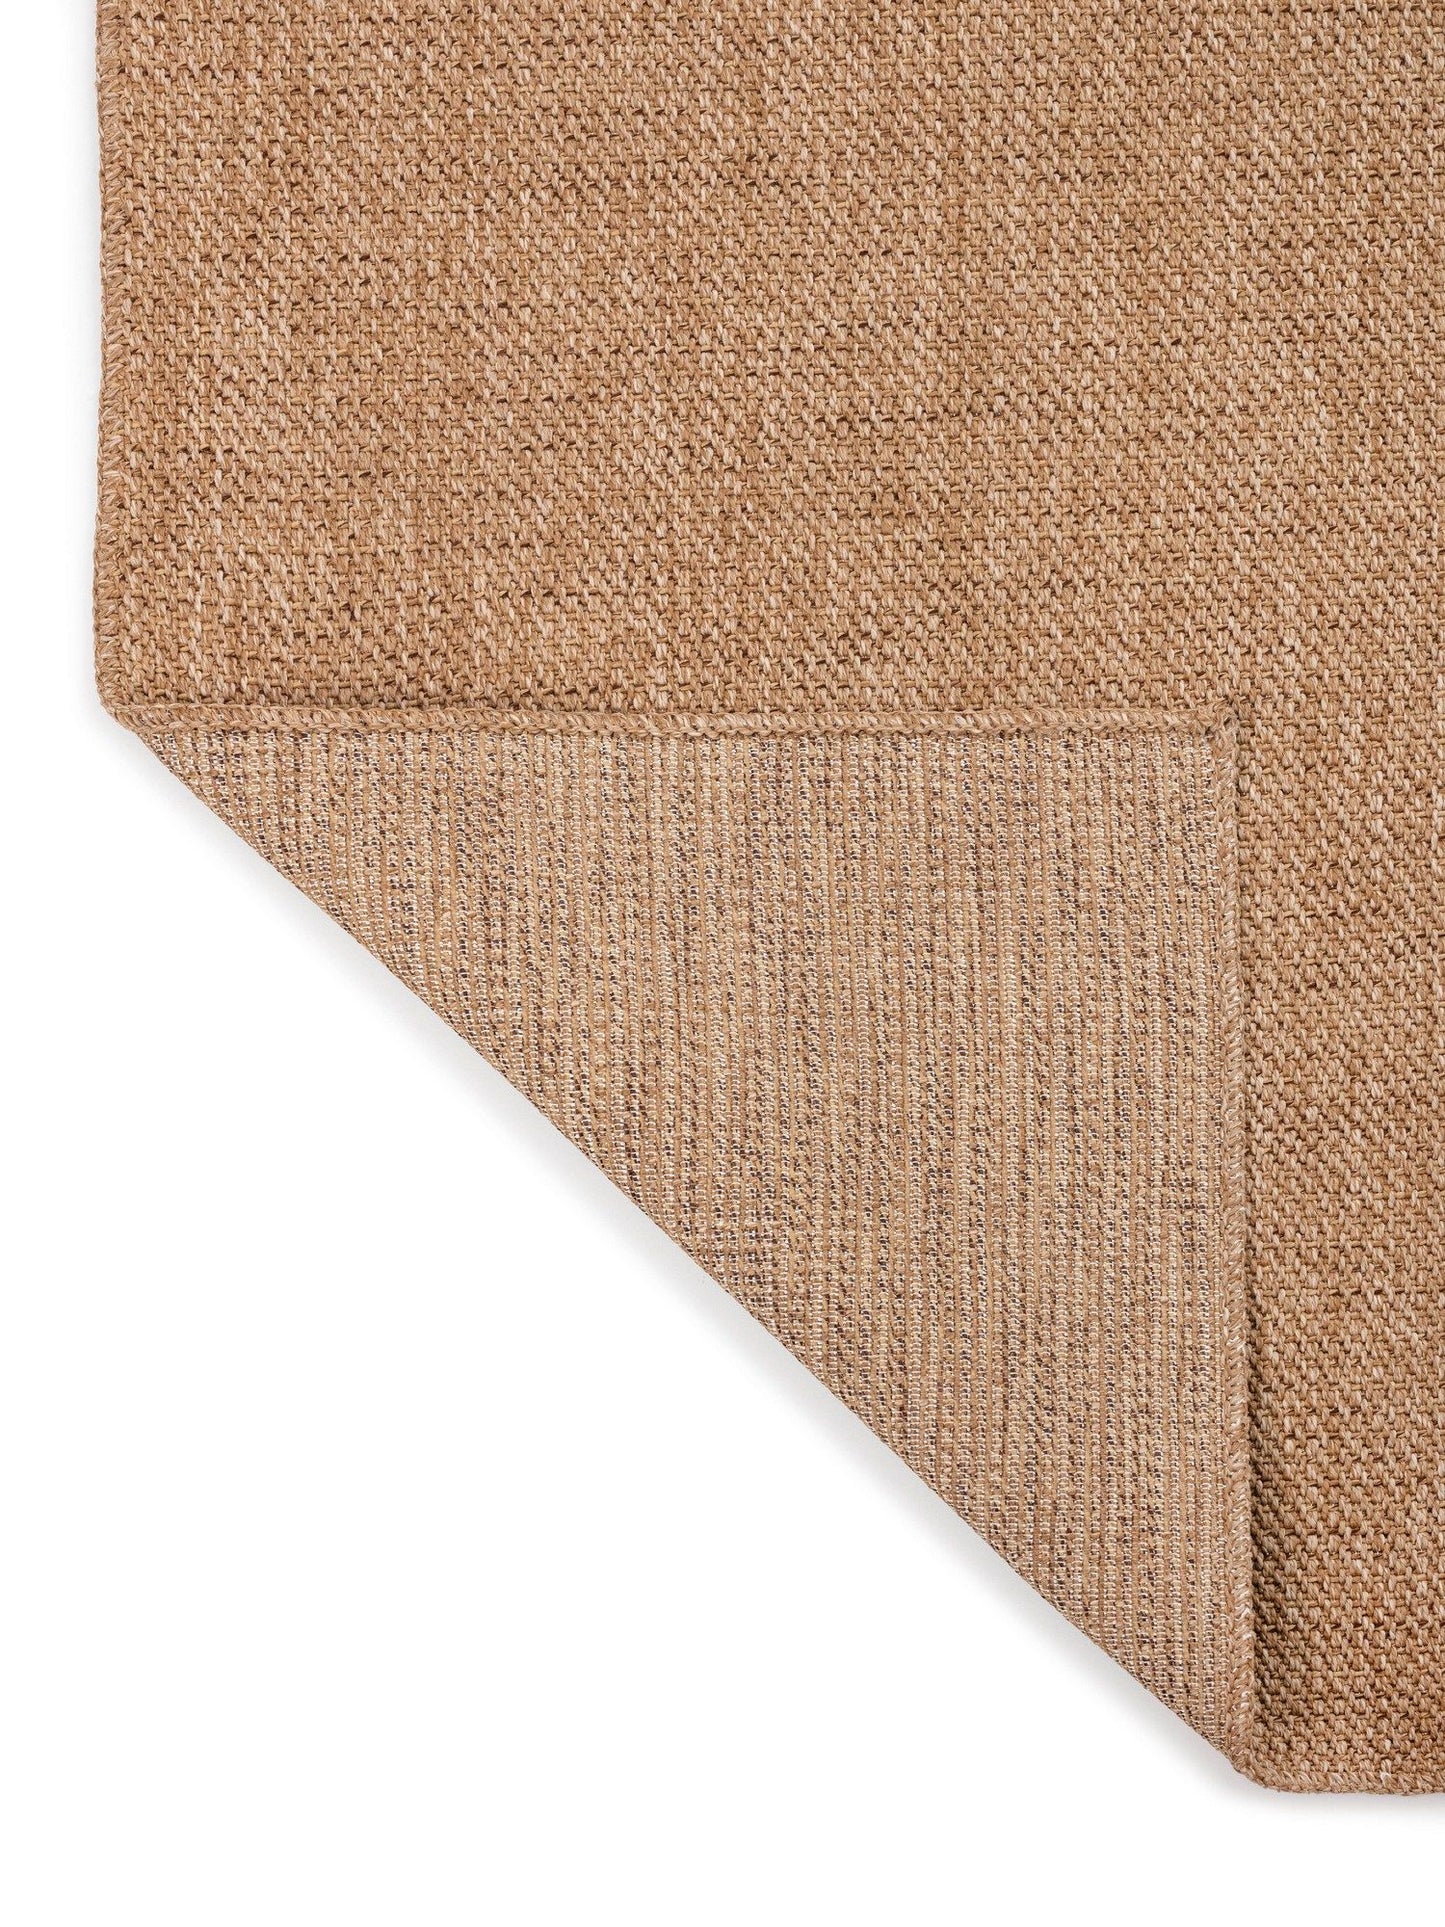 0604 Jut - Brown - Carpet (100 x 200)